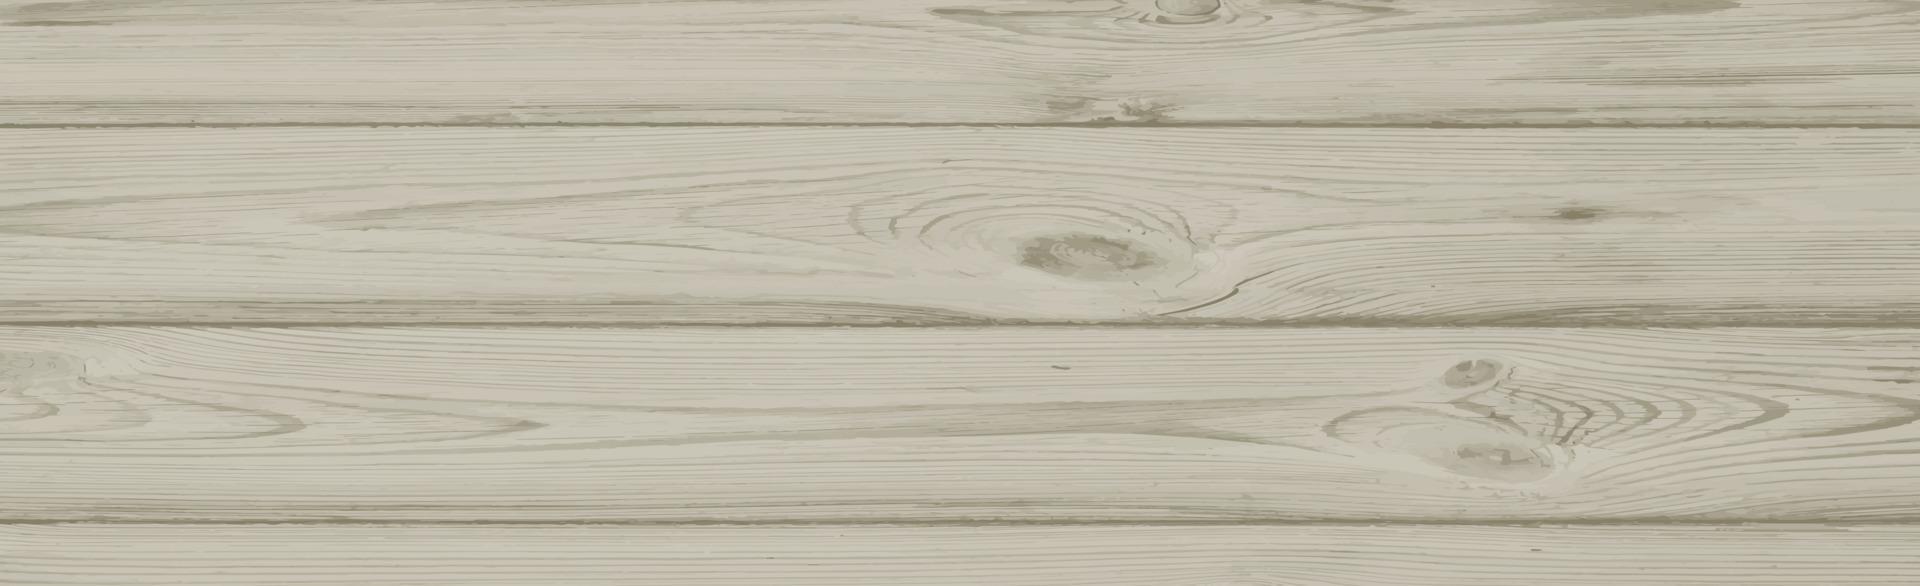 textura panorâmica de madeira clara com nós - vetor